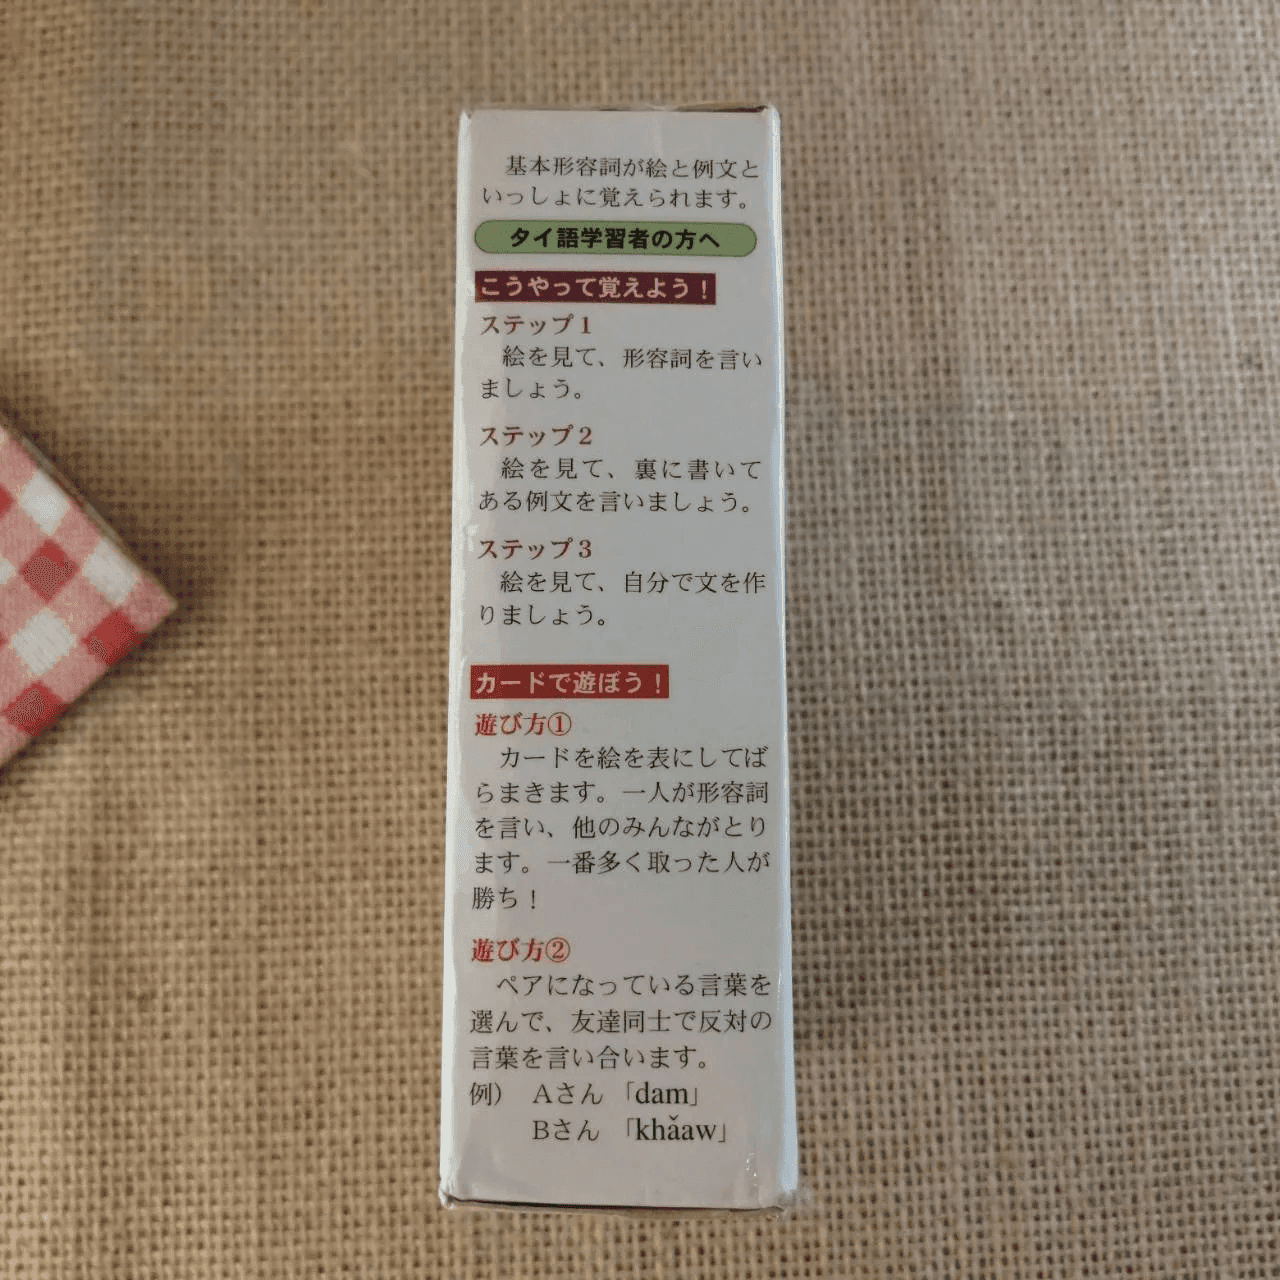 บัตรช่วยจำ ศัพท์ญี่ปุ่น - ไทย ชุด คำคุณศัพท์